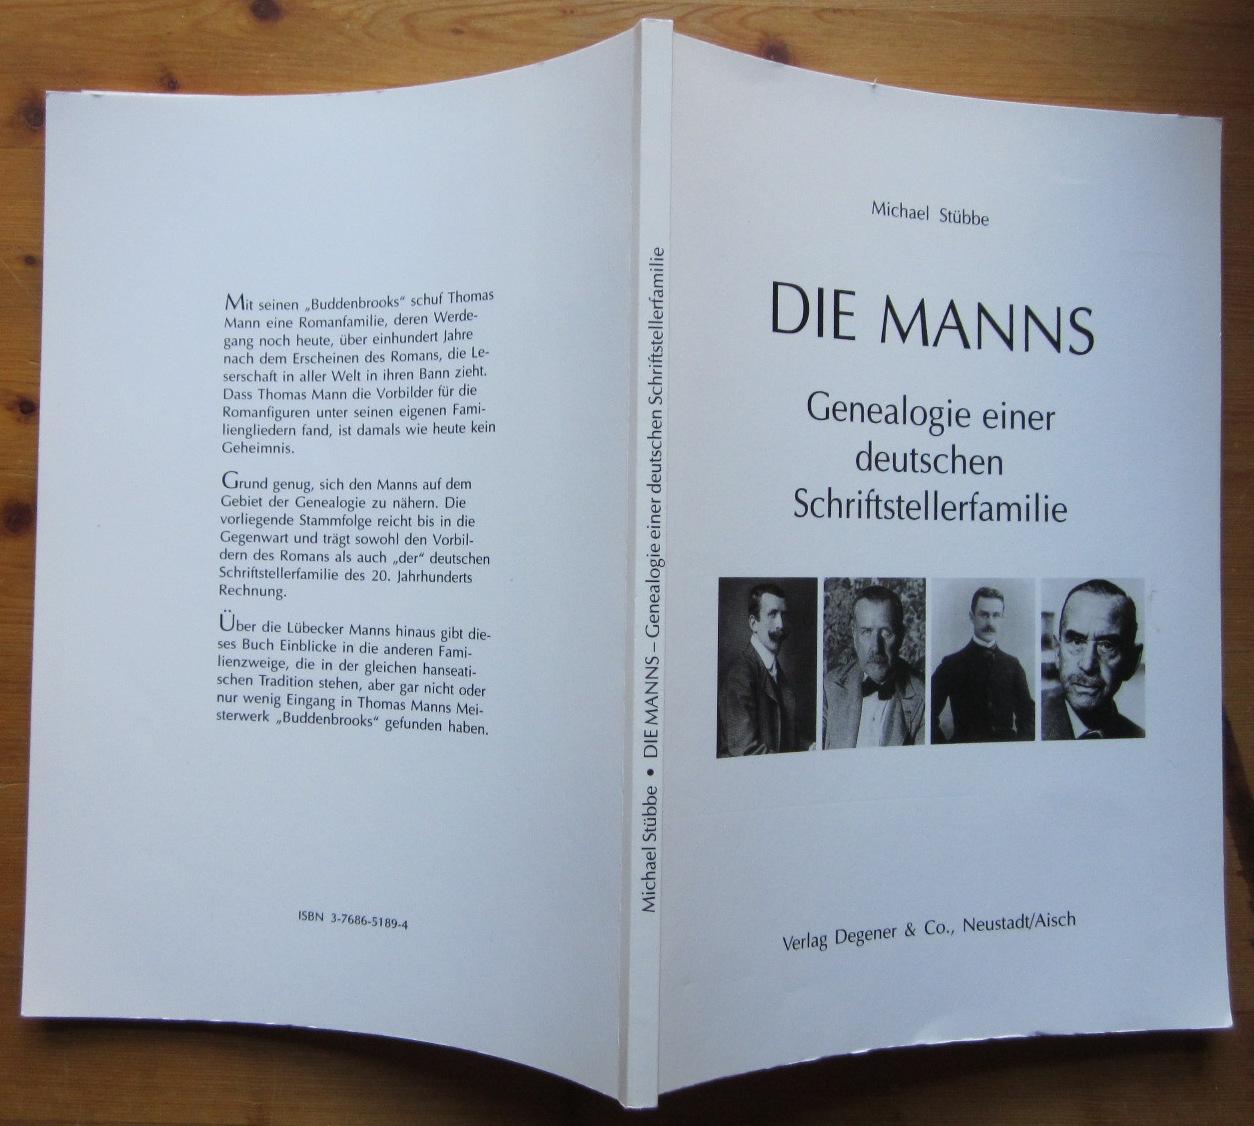 Deutsches Familienarchiv. Ein genealogisches Sammelwerk / Die Manns: Genealogie einer deutschen Schriftstellerfamilie